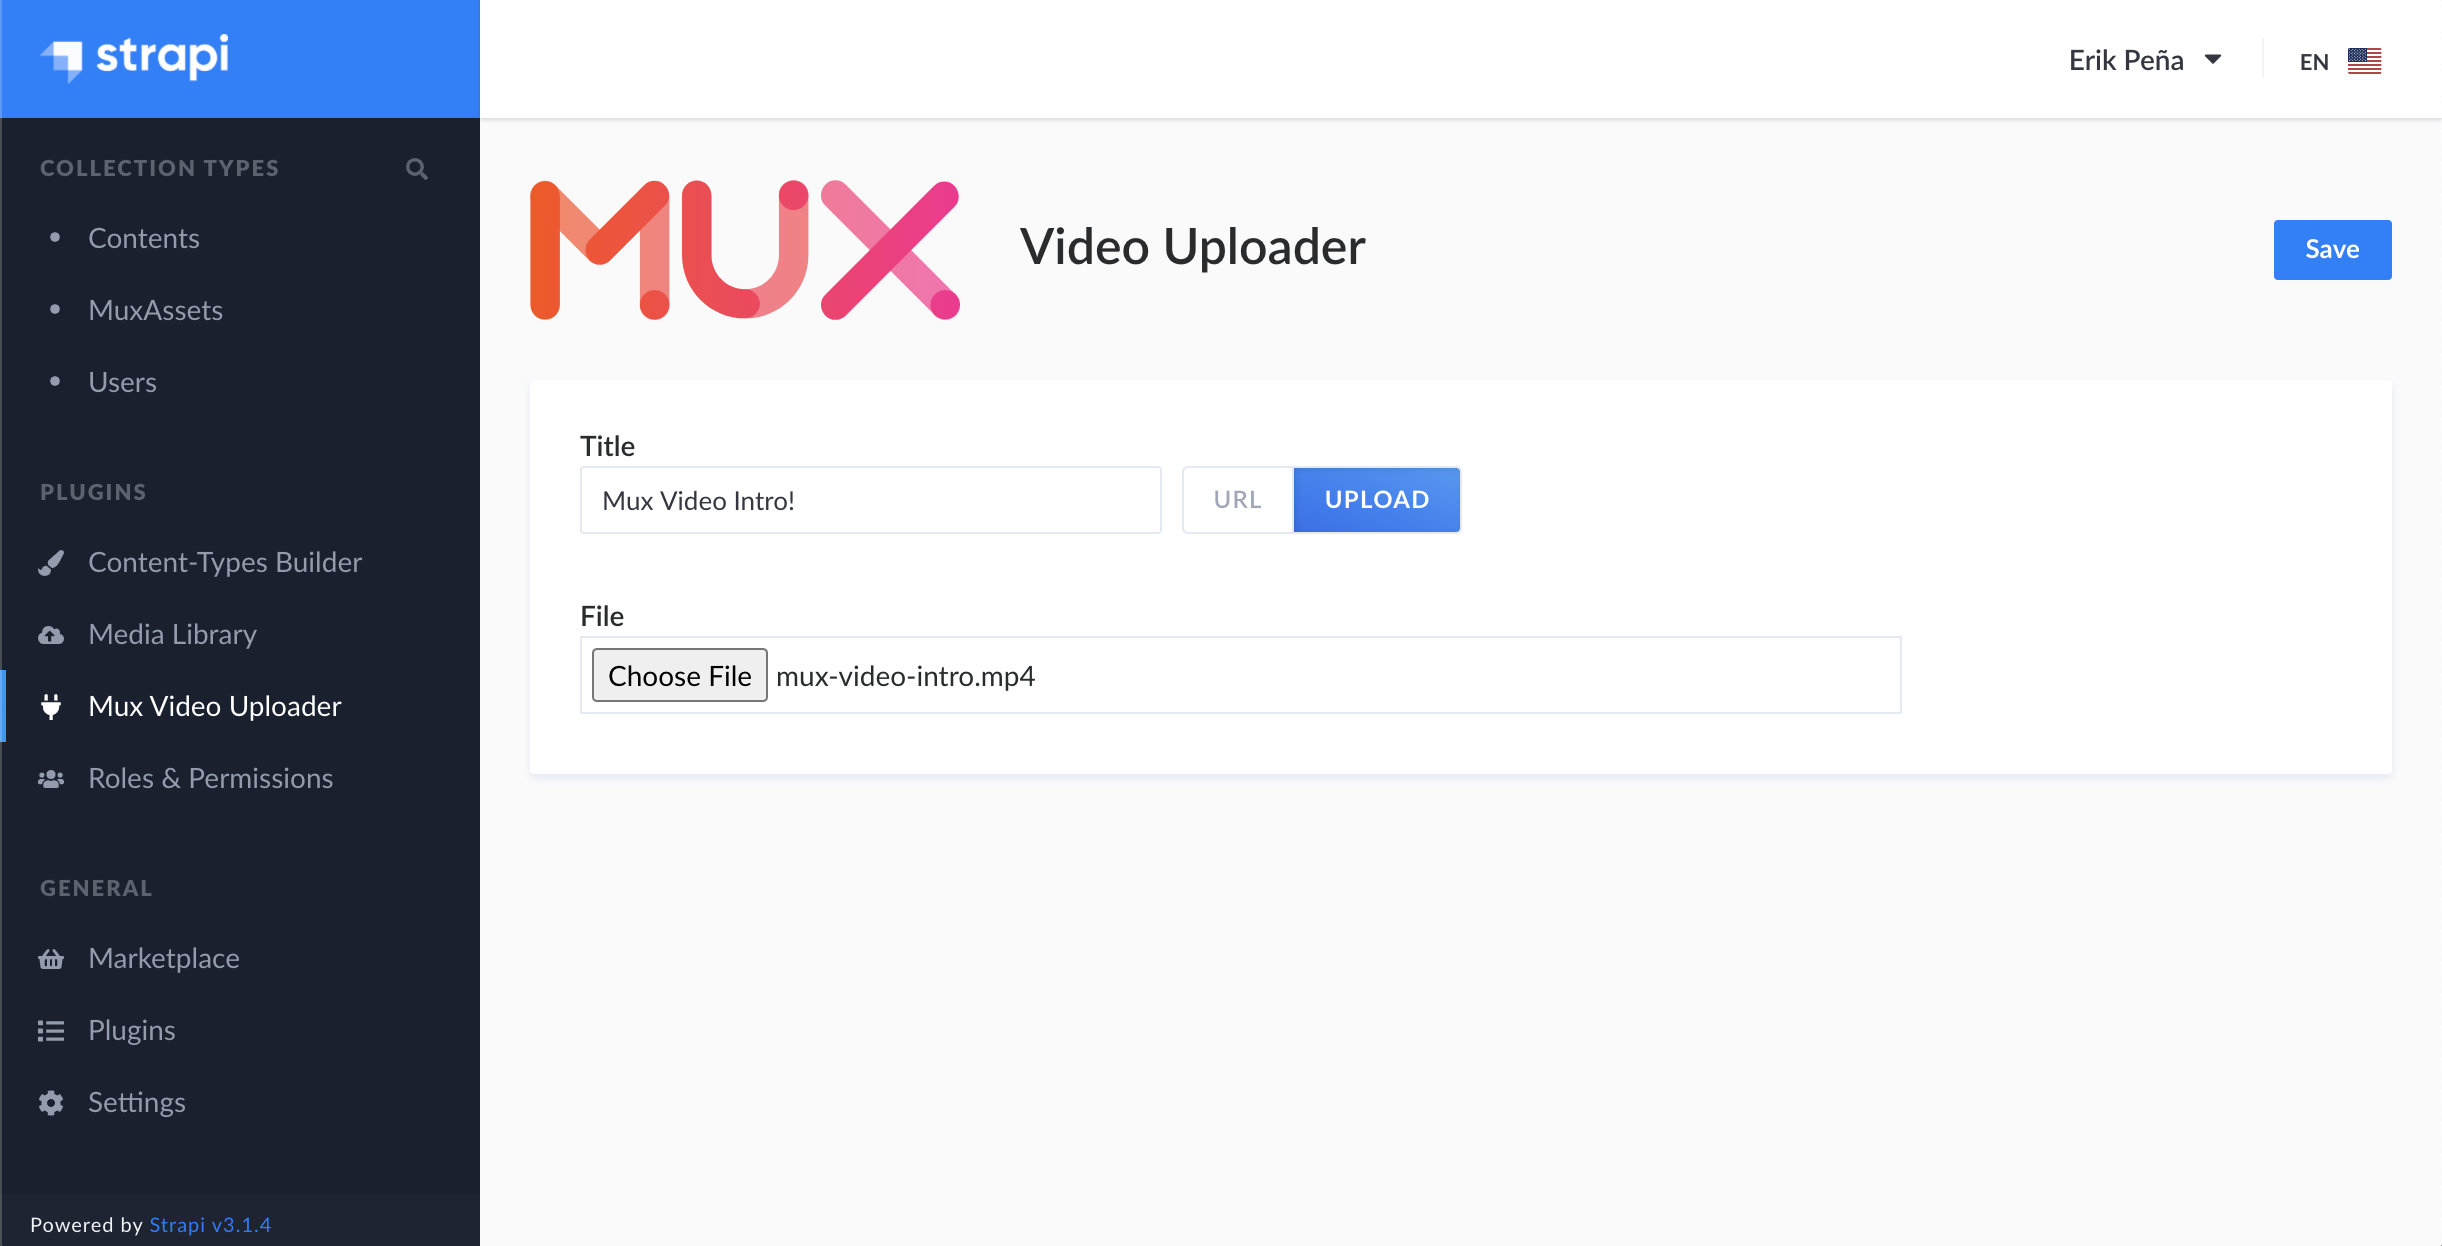 Mux Video Uploader - Direct Upload